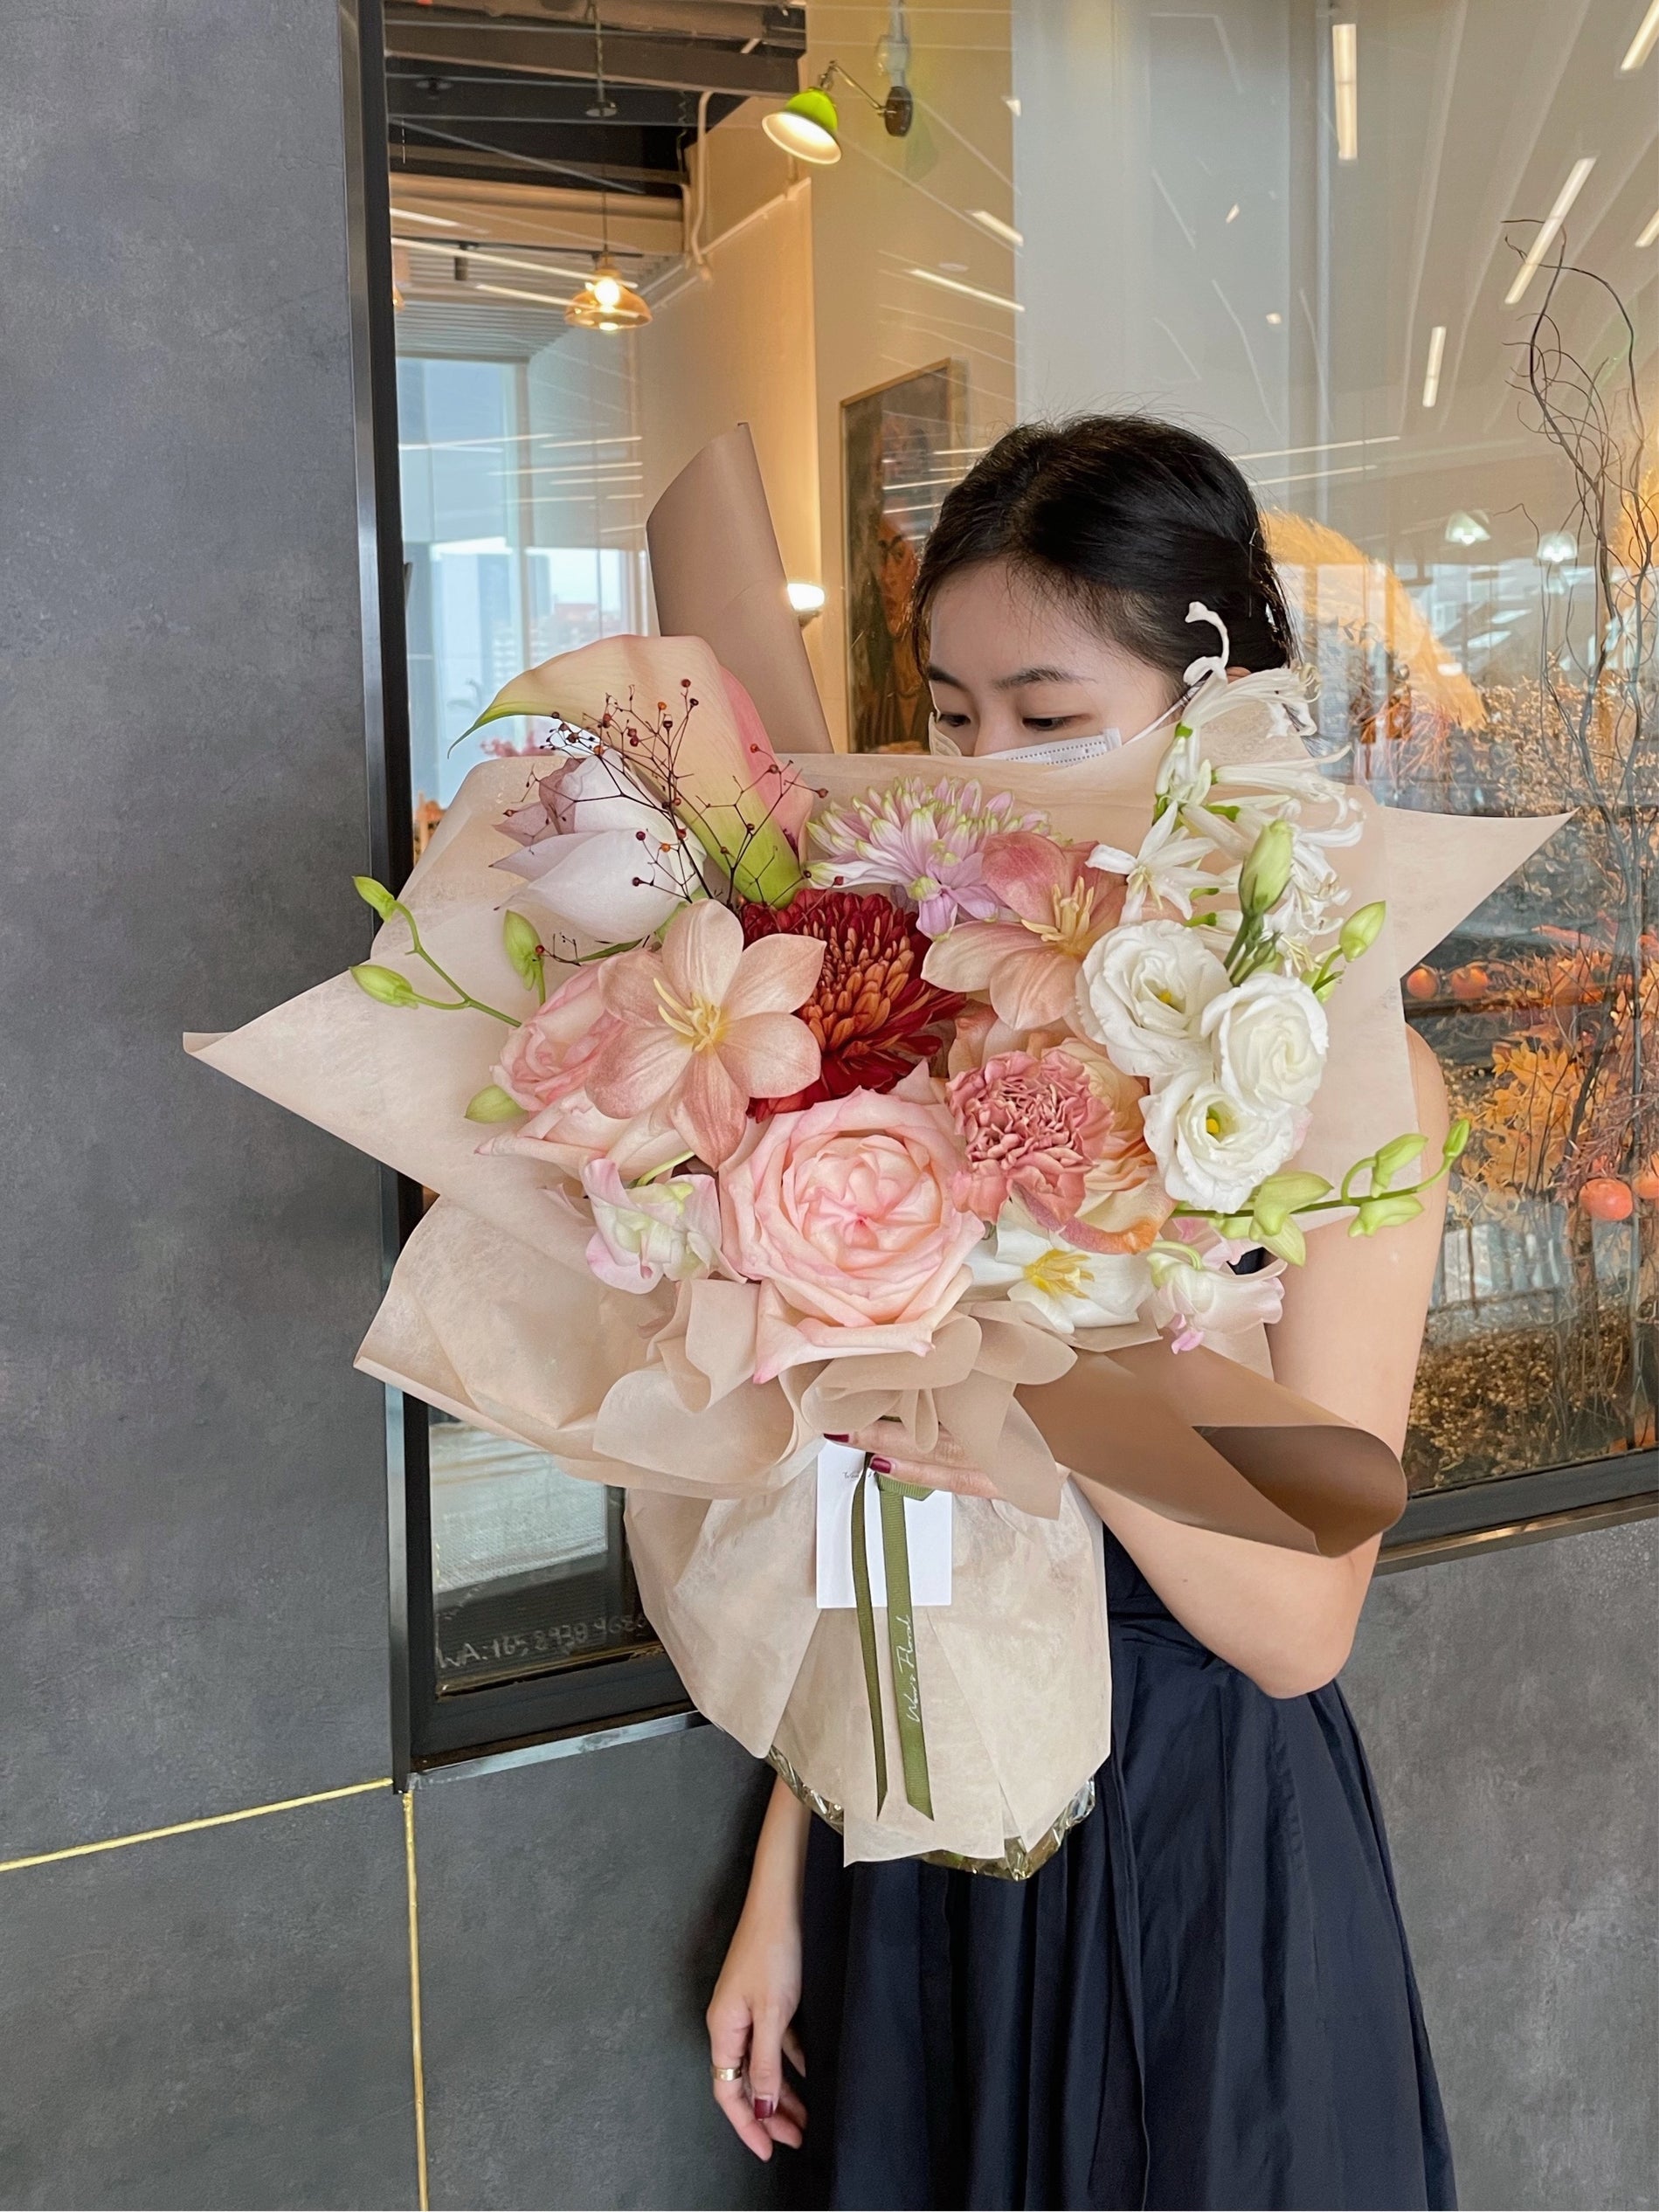 Wen's Floral Studio Bouquets Table Arrangements Weddings Events Workshop Roses Singapore